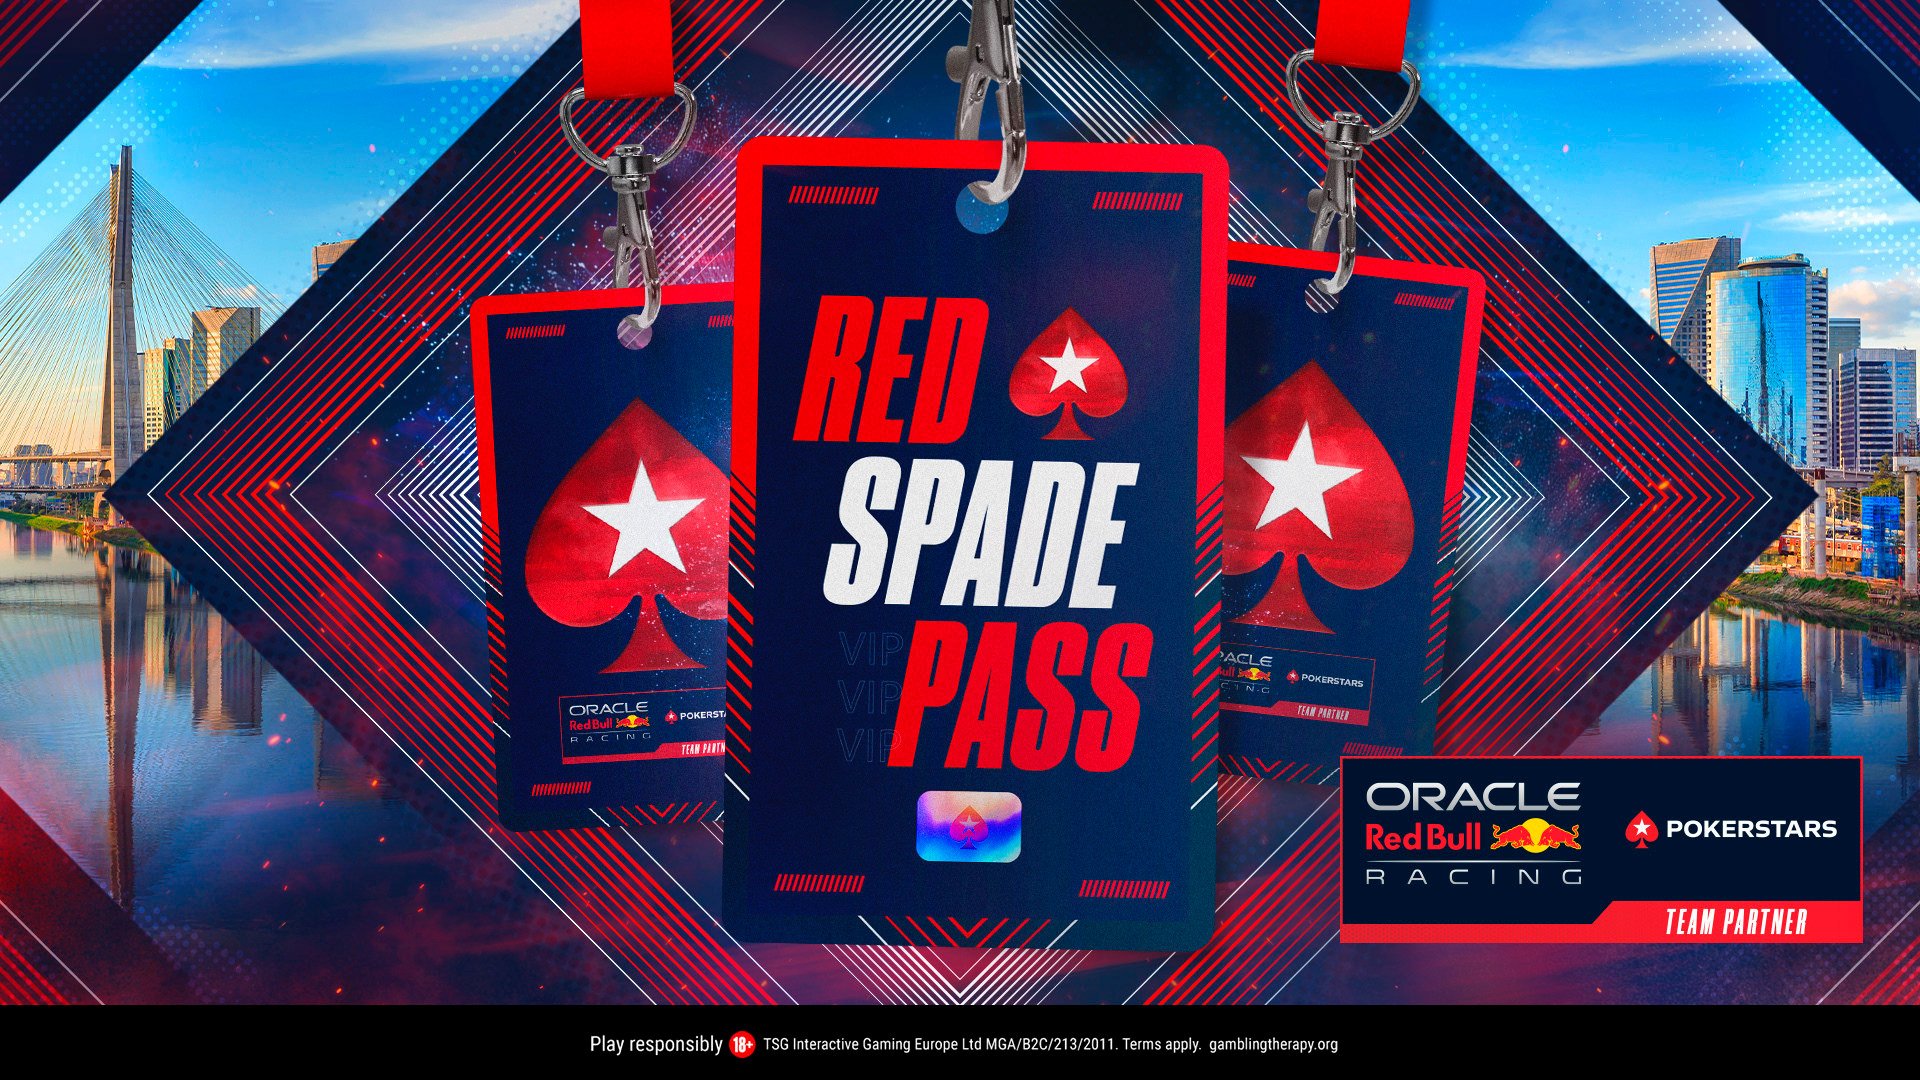 PokerStars lanzó una promoción que premia a los jugadores con una experiencia de F1 en el Gran Premio de Brasil